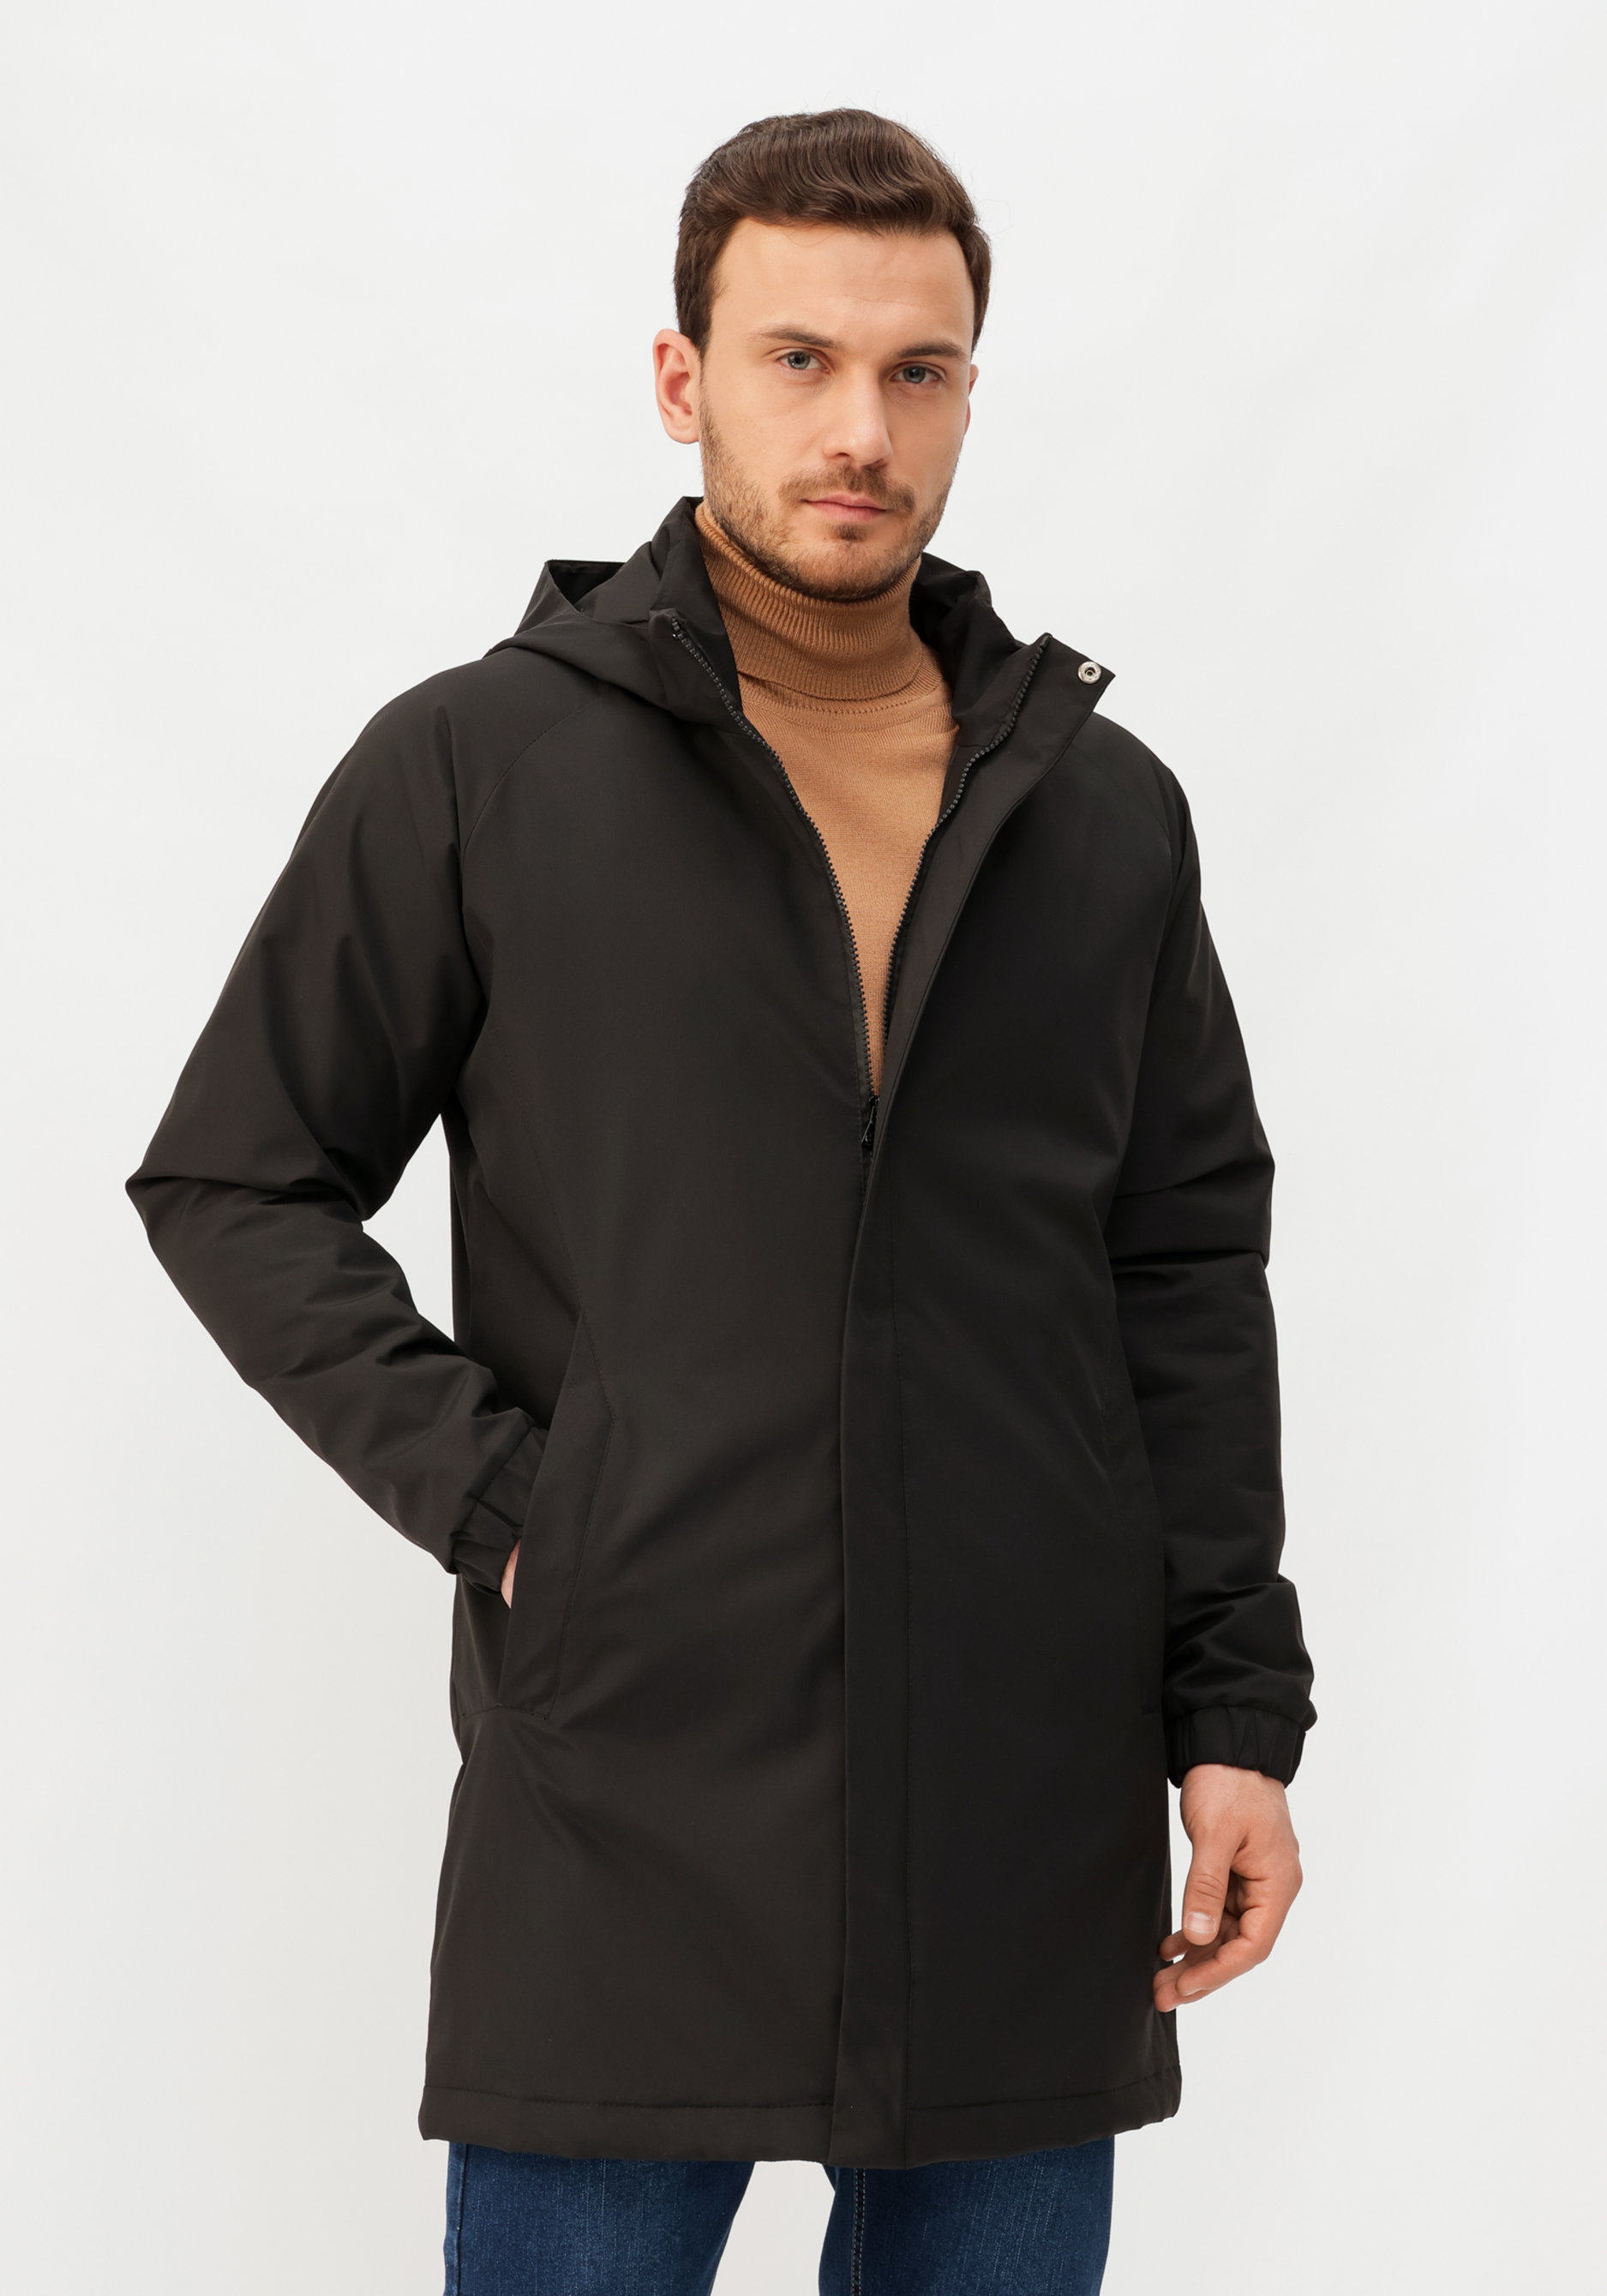 Куртка мужская демисезонная Moran Brave, размер 50, цвет черный